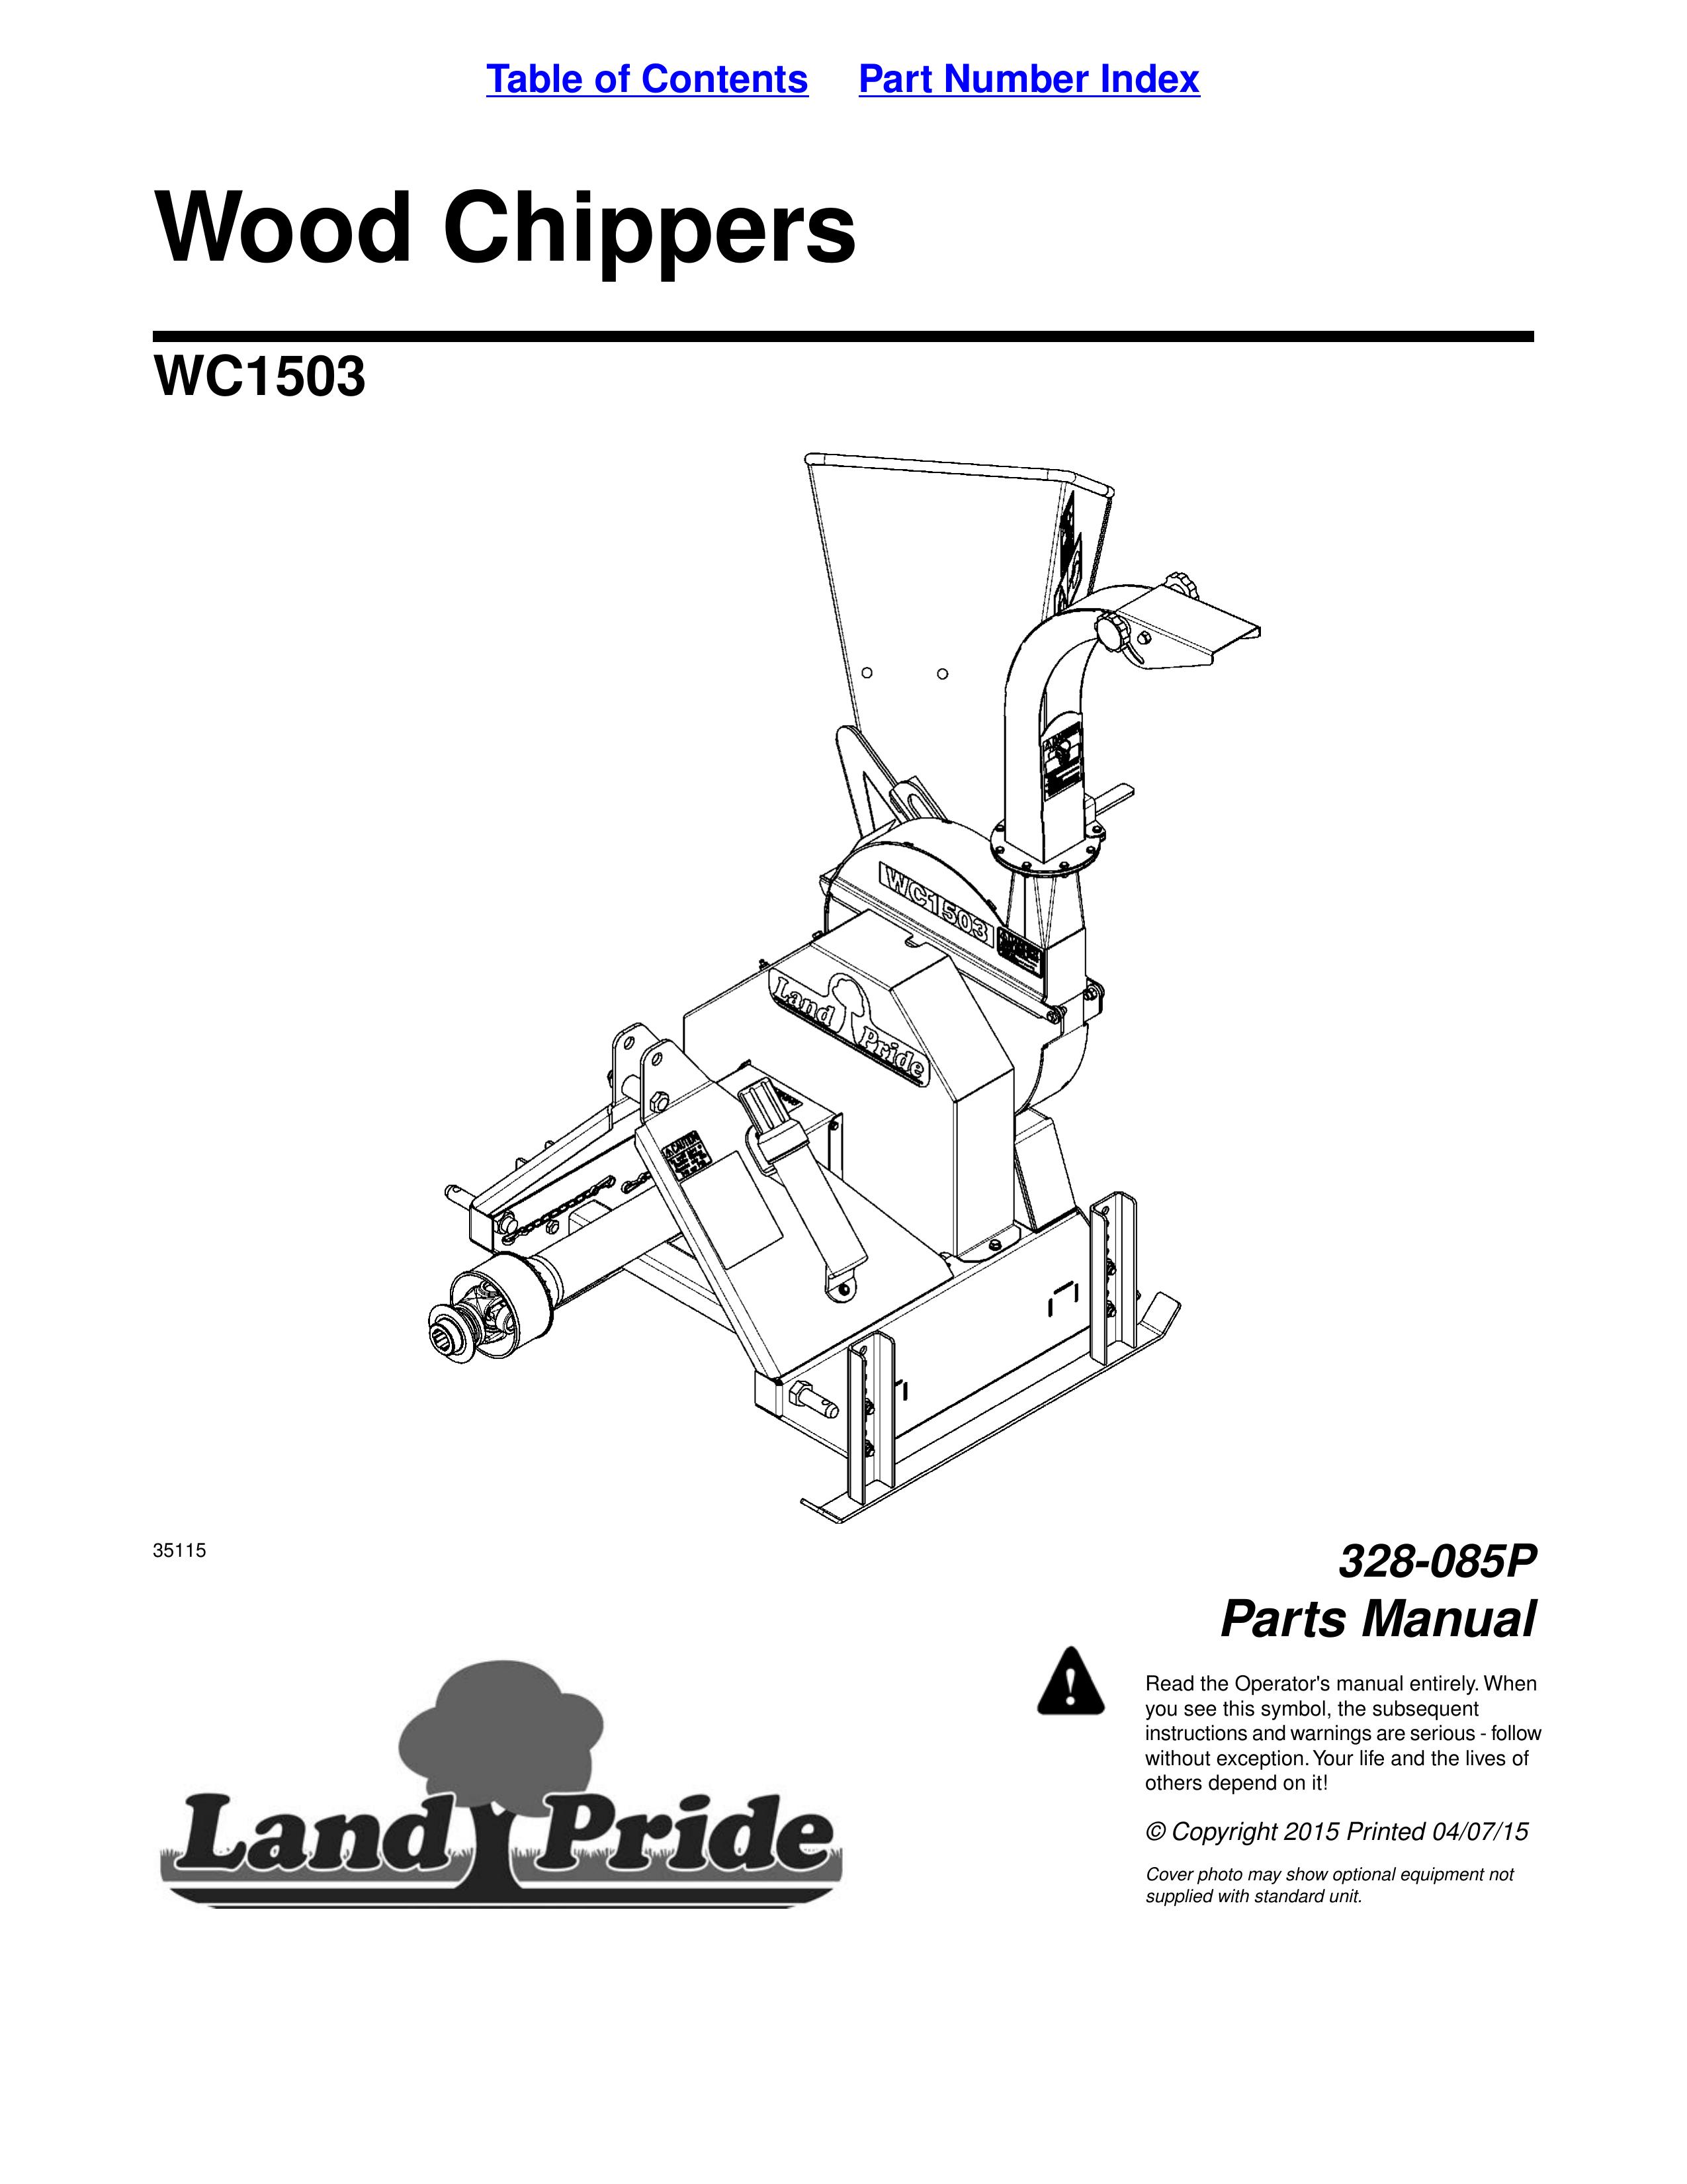 Land Pride 328-085P Chipper User Manual